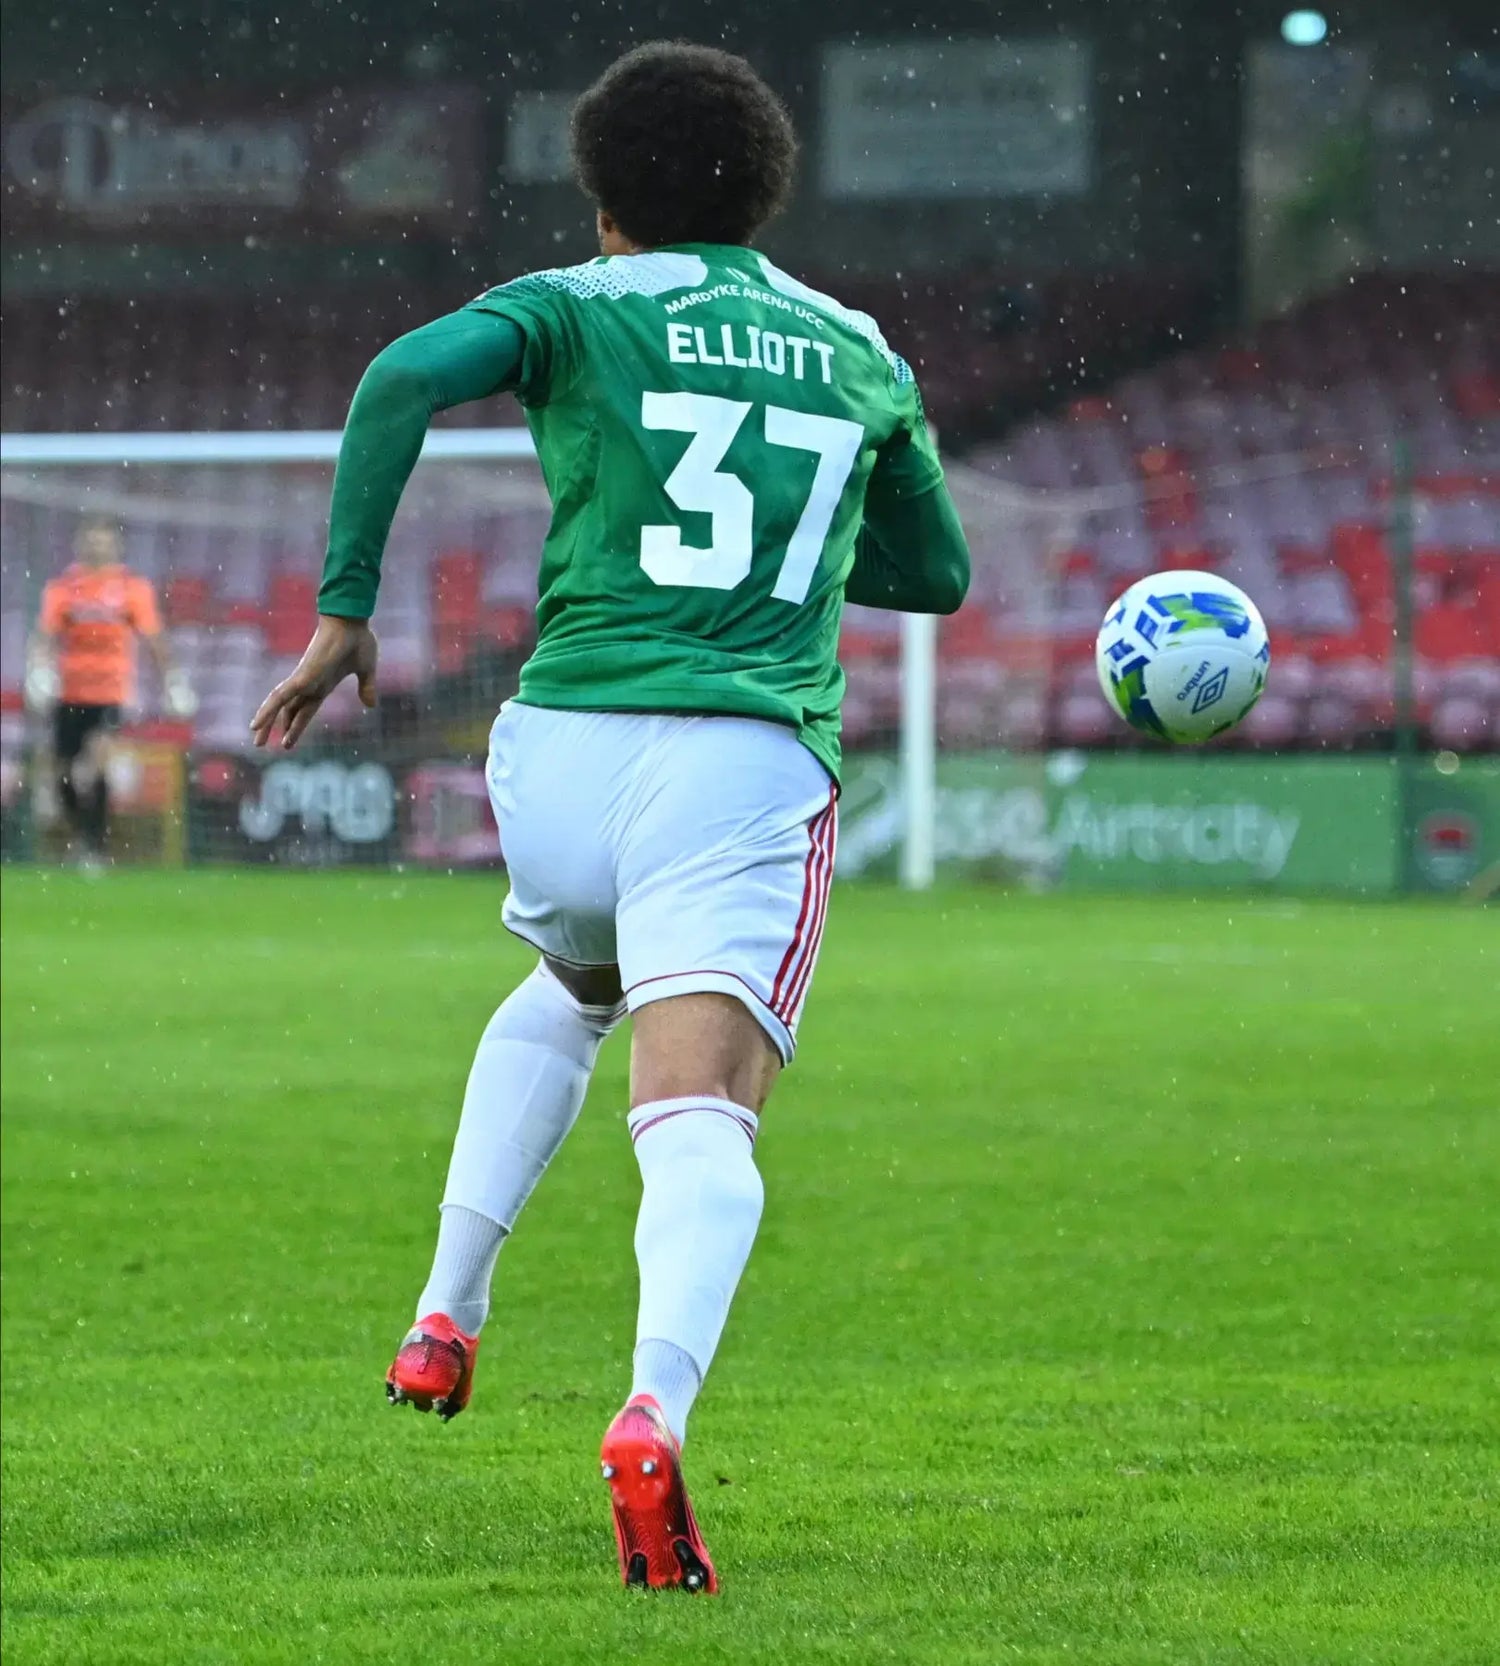 Elliott returns to Huddersfield